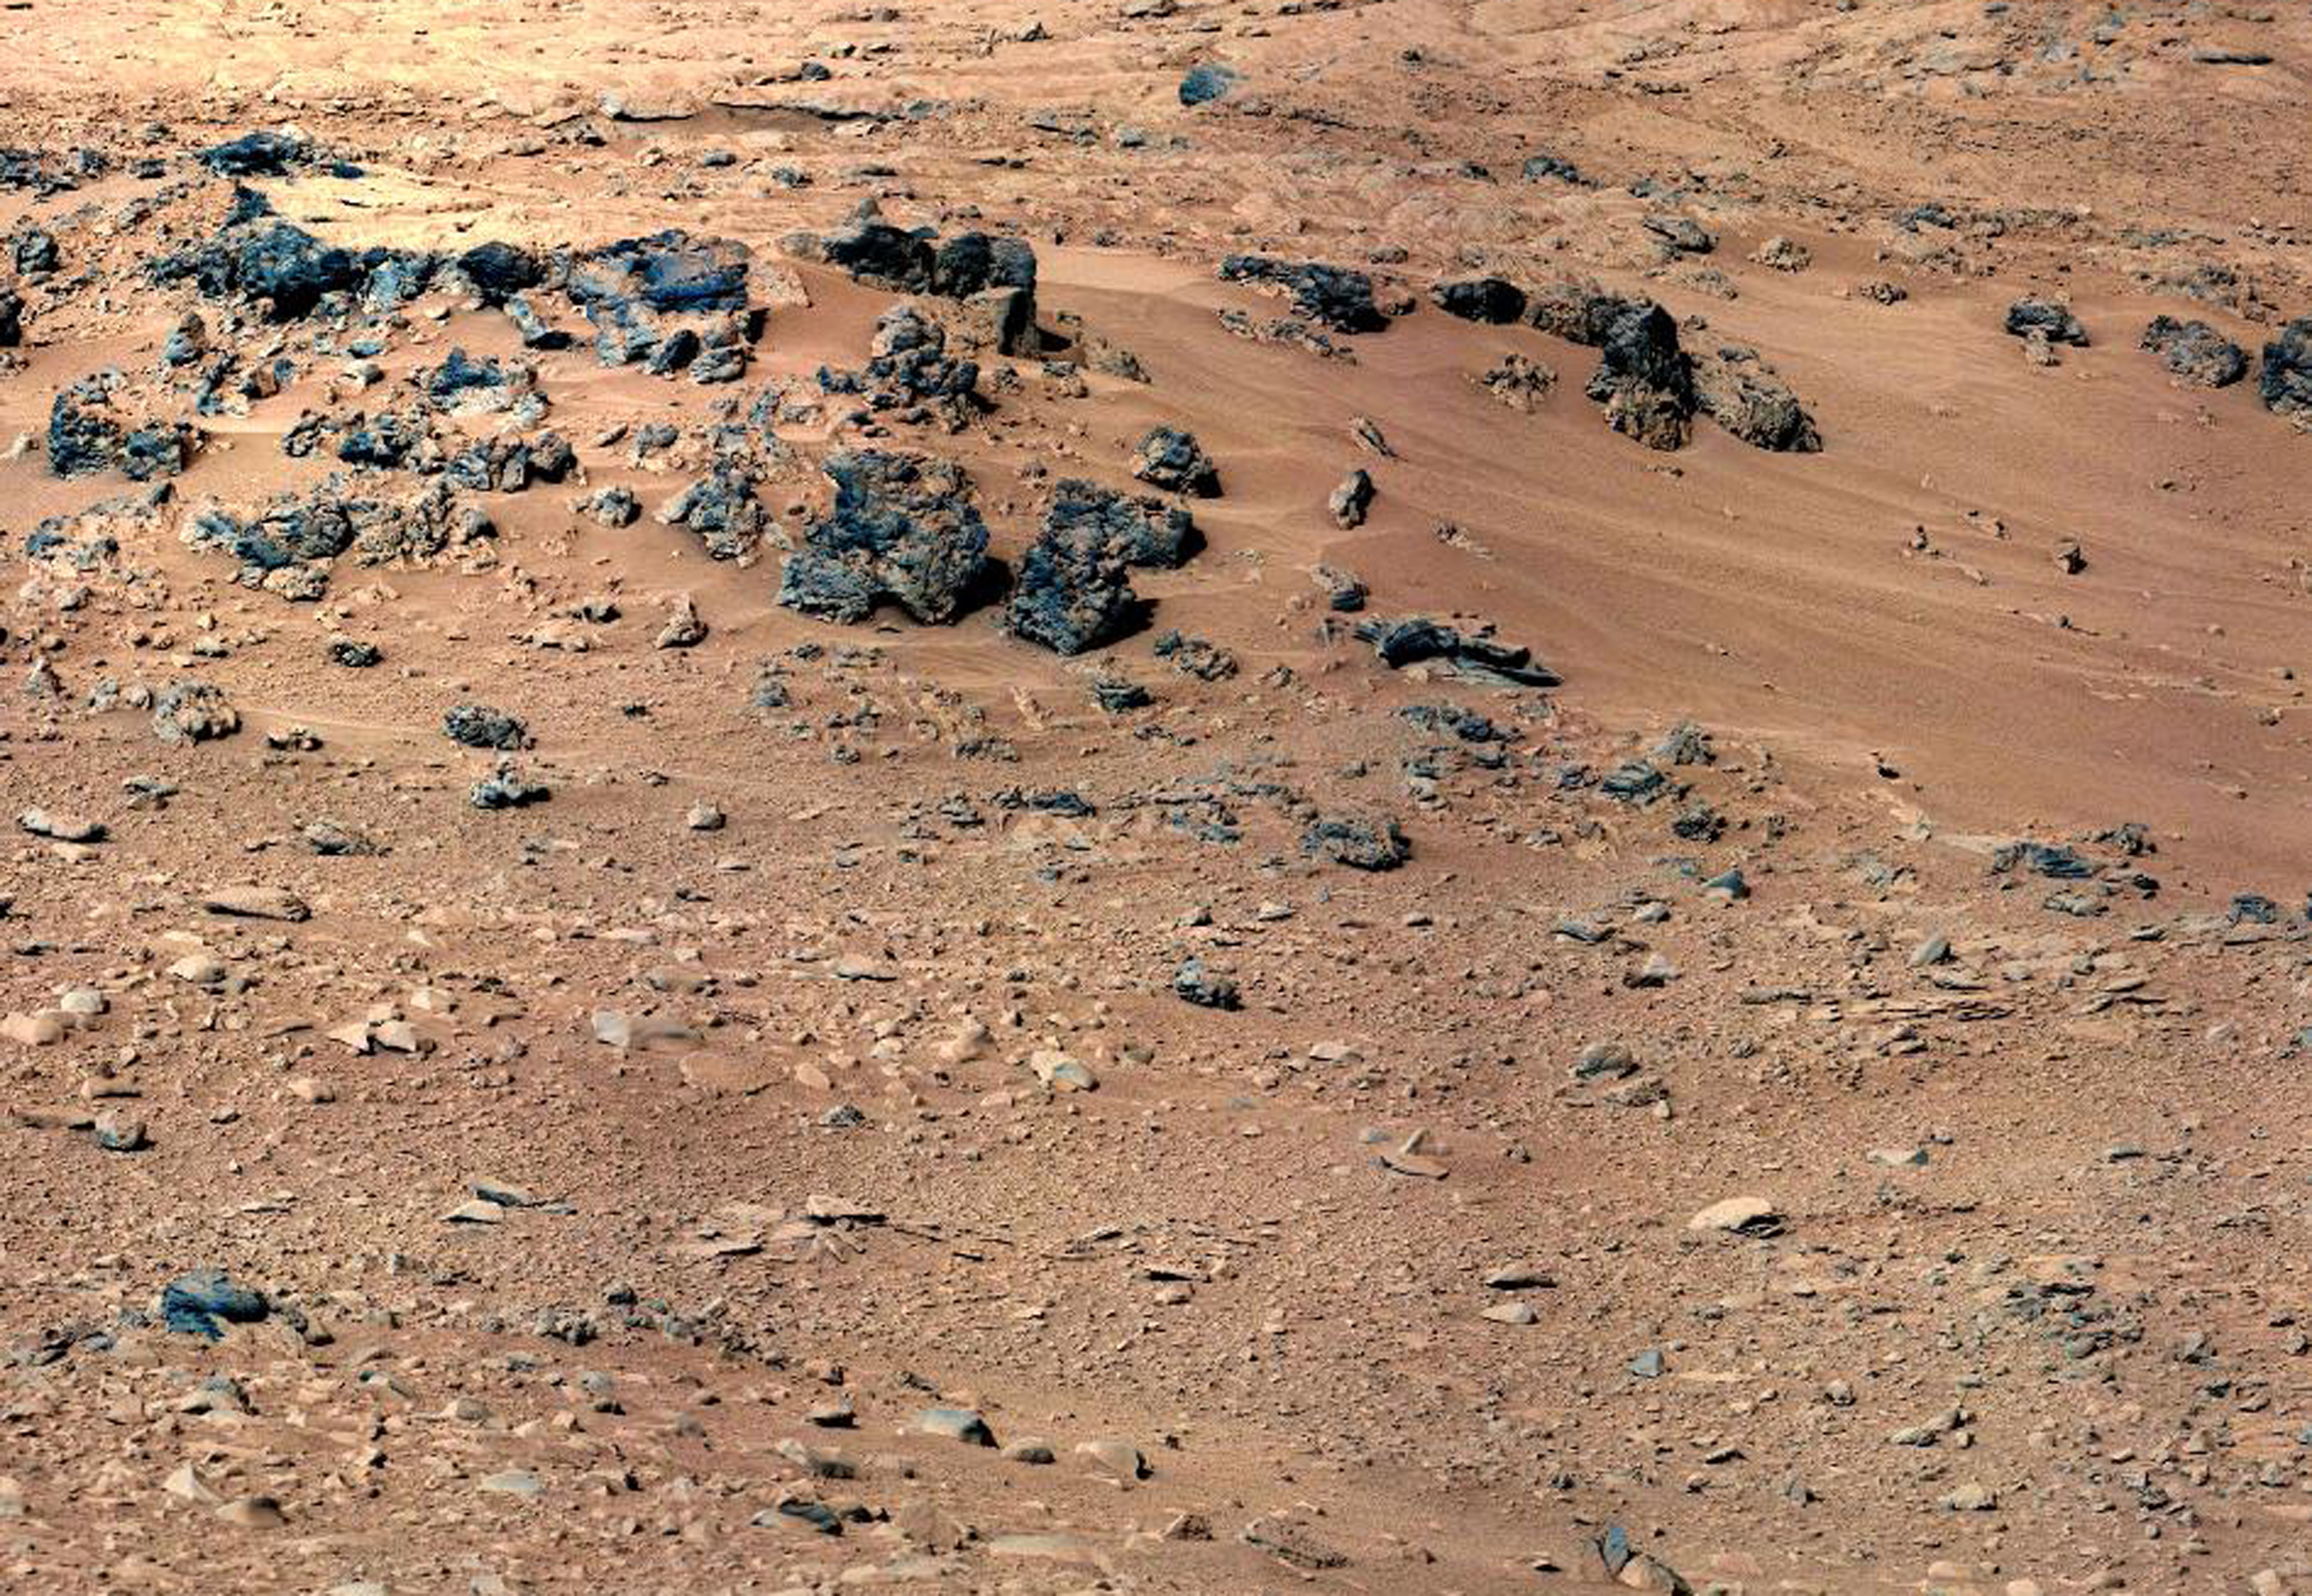 Just nu ser det ut så här på Mars, inte så livat.